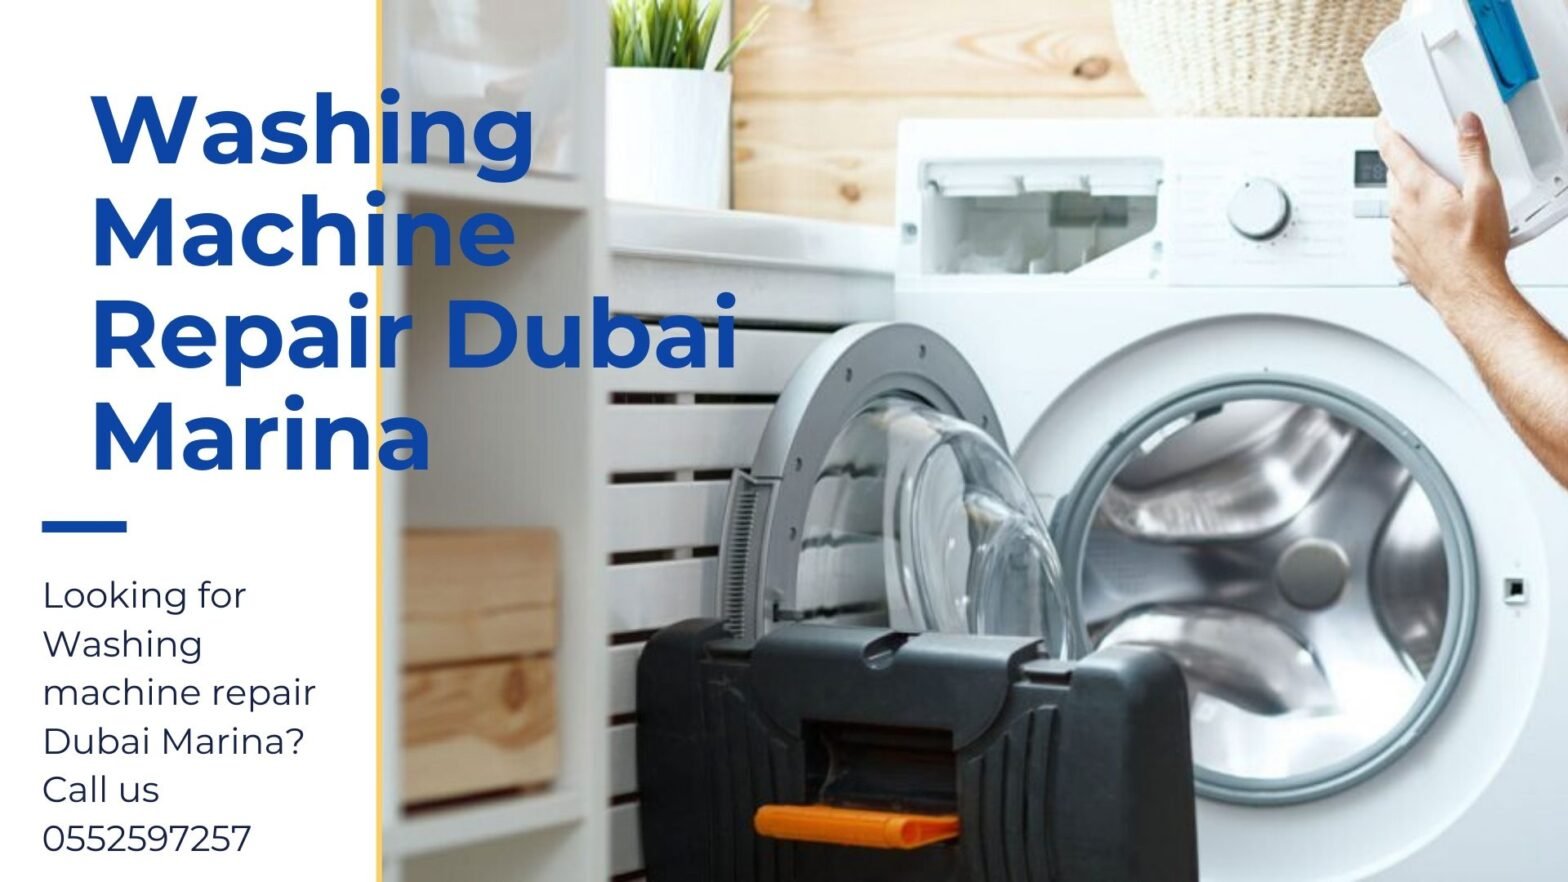 Washing machine repair Dubai marina